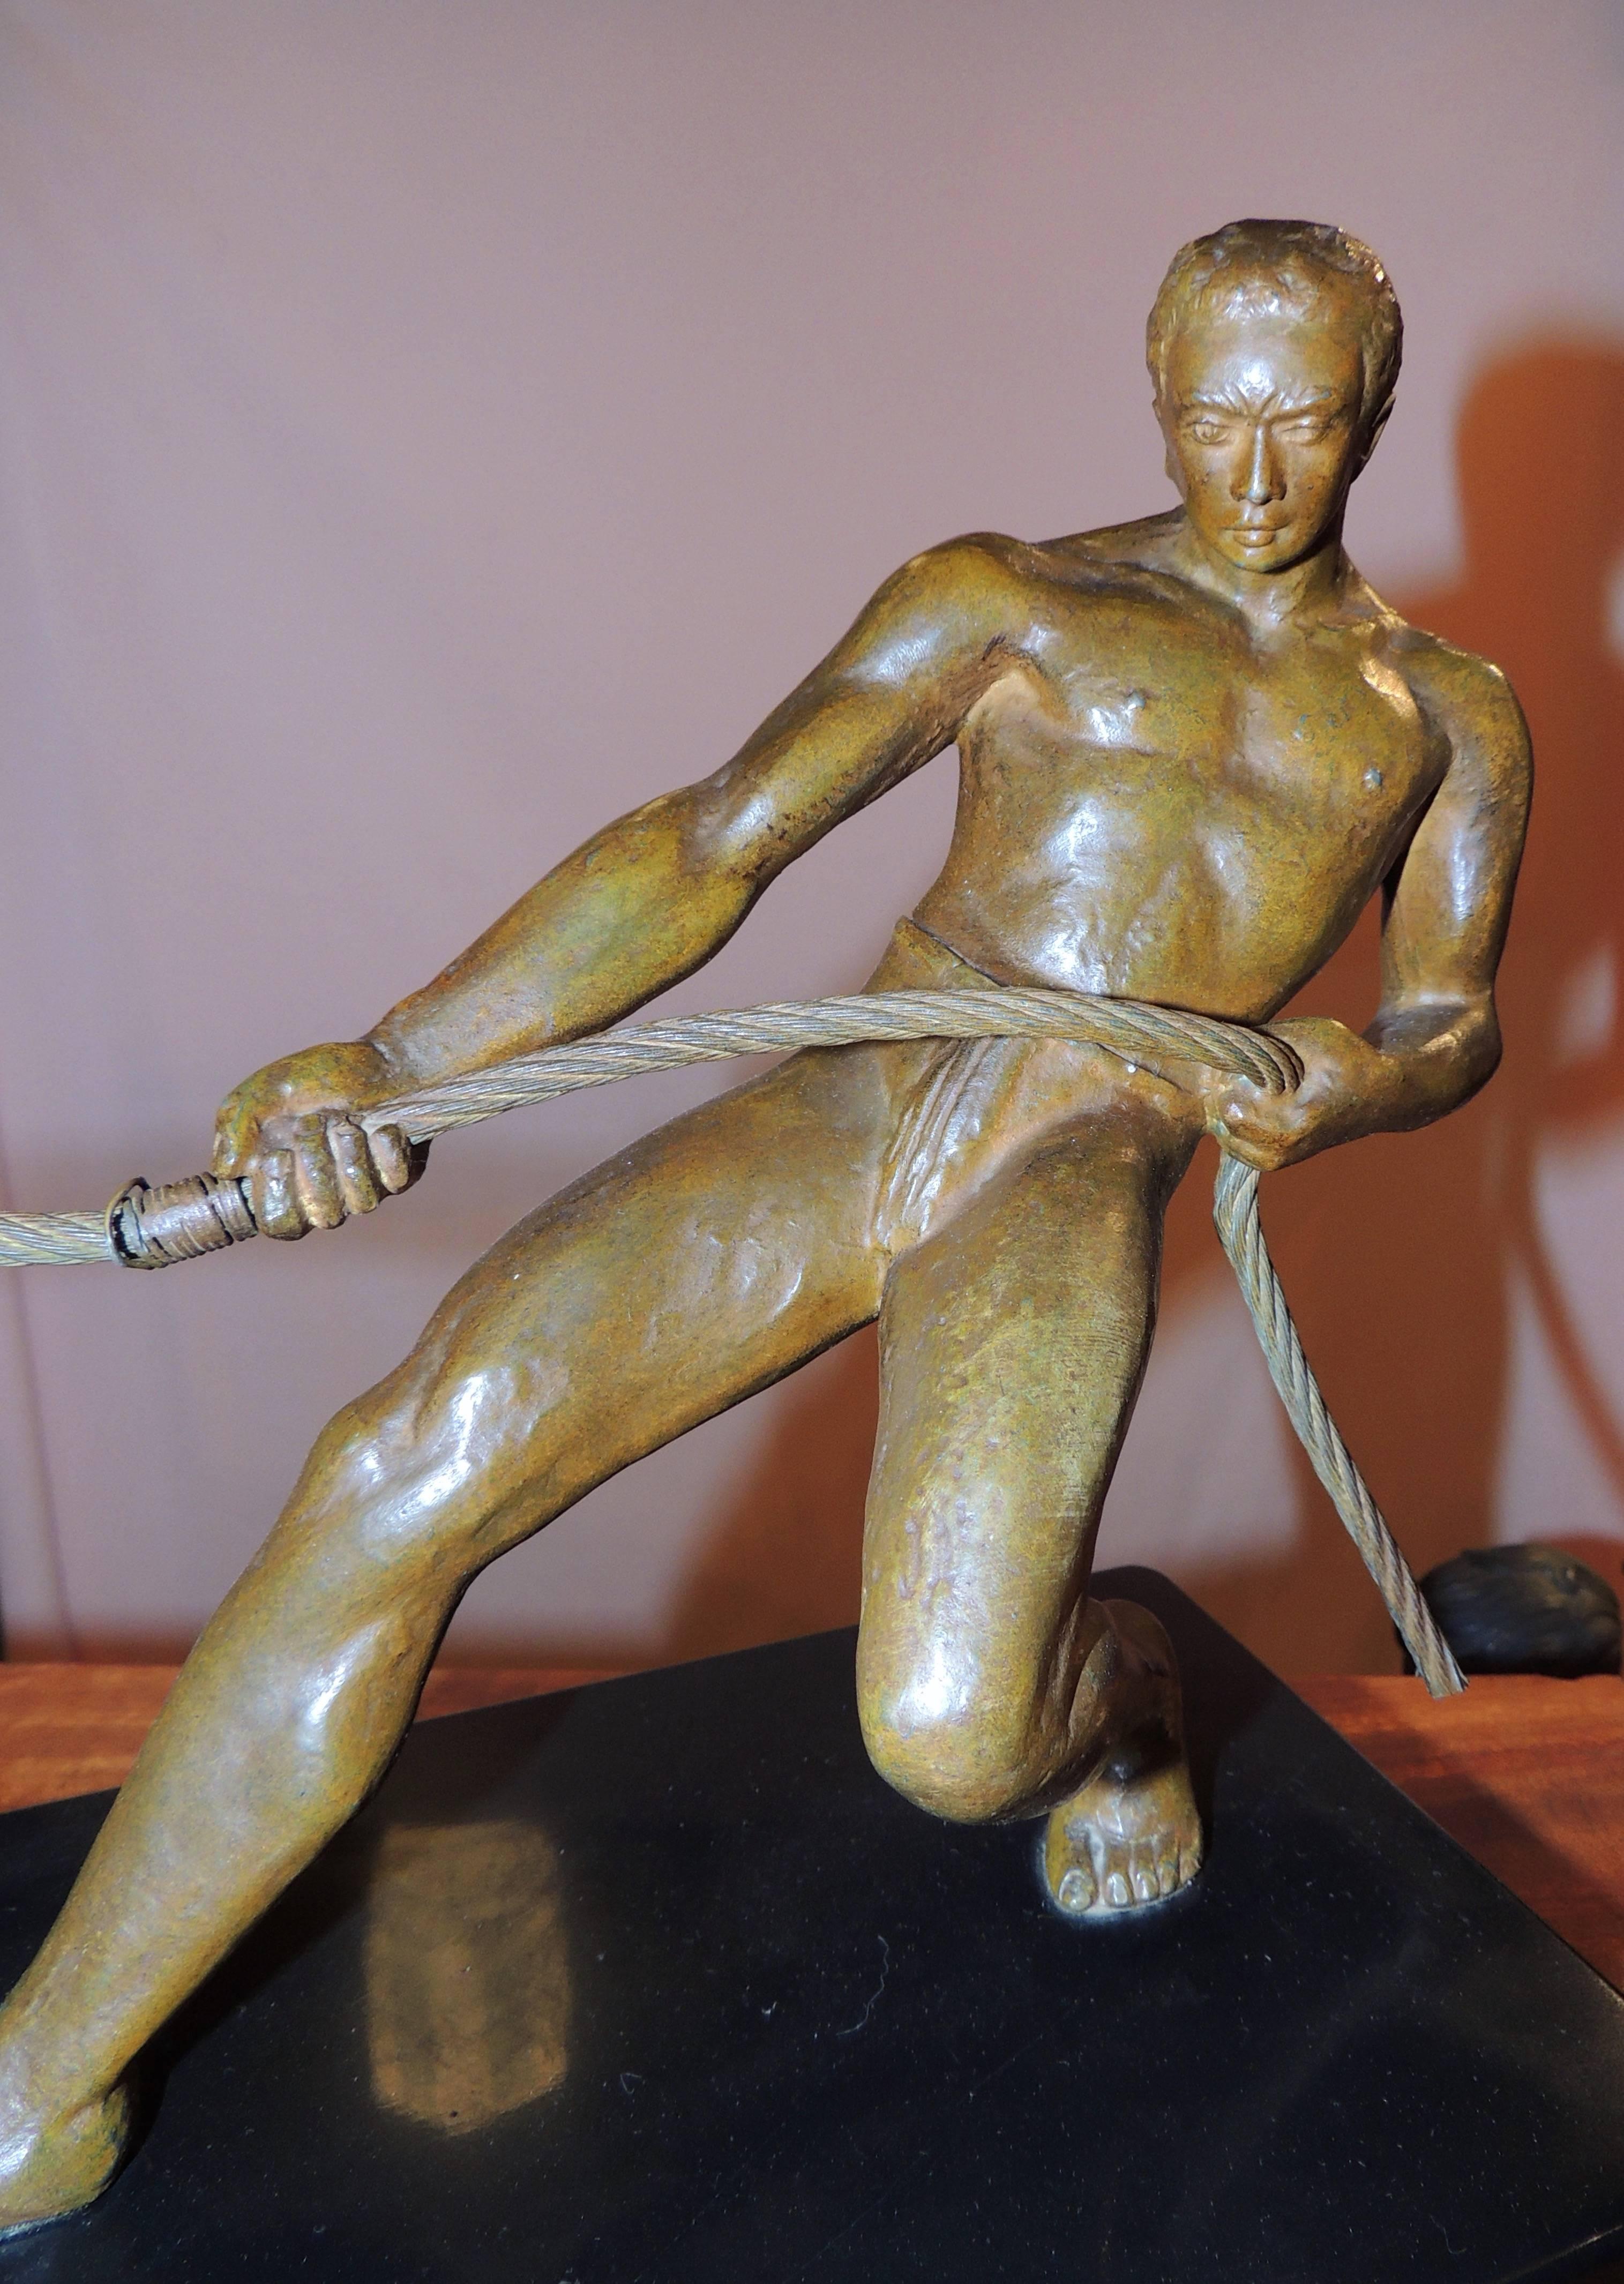 Eine Art-Deco-Bronzeskulptur eines Mannes, der ein Seil ergreift und ein Ruderboot an Land zieht. Es ist ein starkes und ungewöhnliches Bild, im Gegensatz zu den vielen Bildern von Männern, die Speere werfen oder Stahl biegen, wird hier ein Teil des